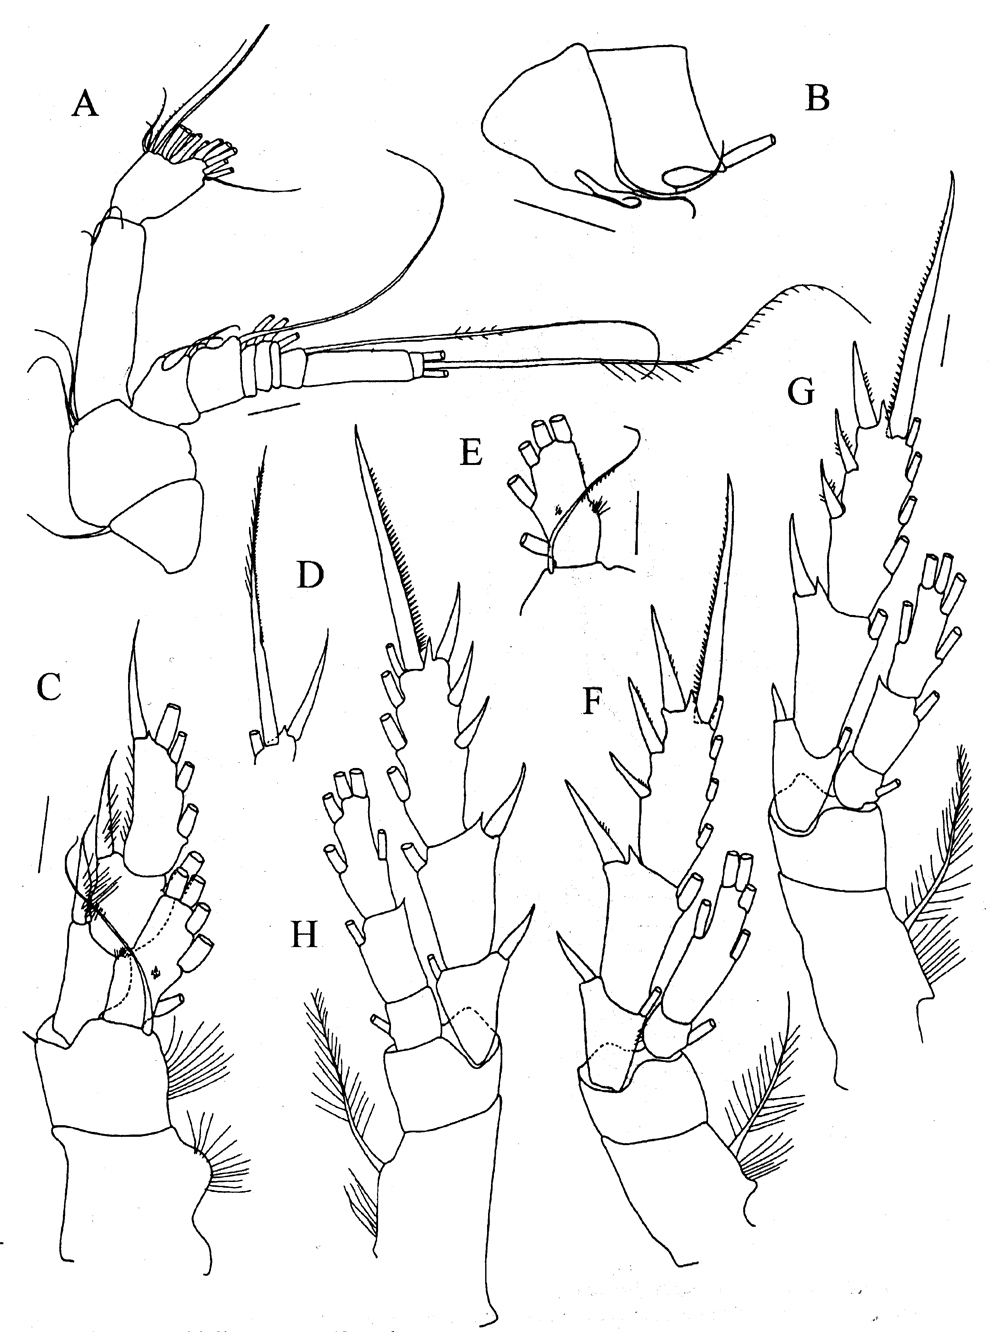 Species Bradyetes weddellanus - Plate 3 of morphological figures